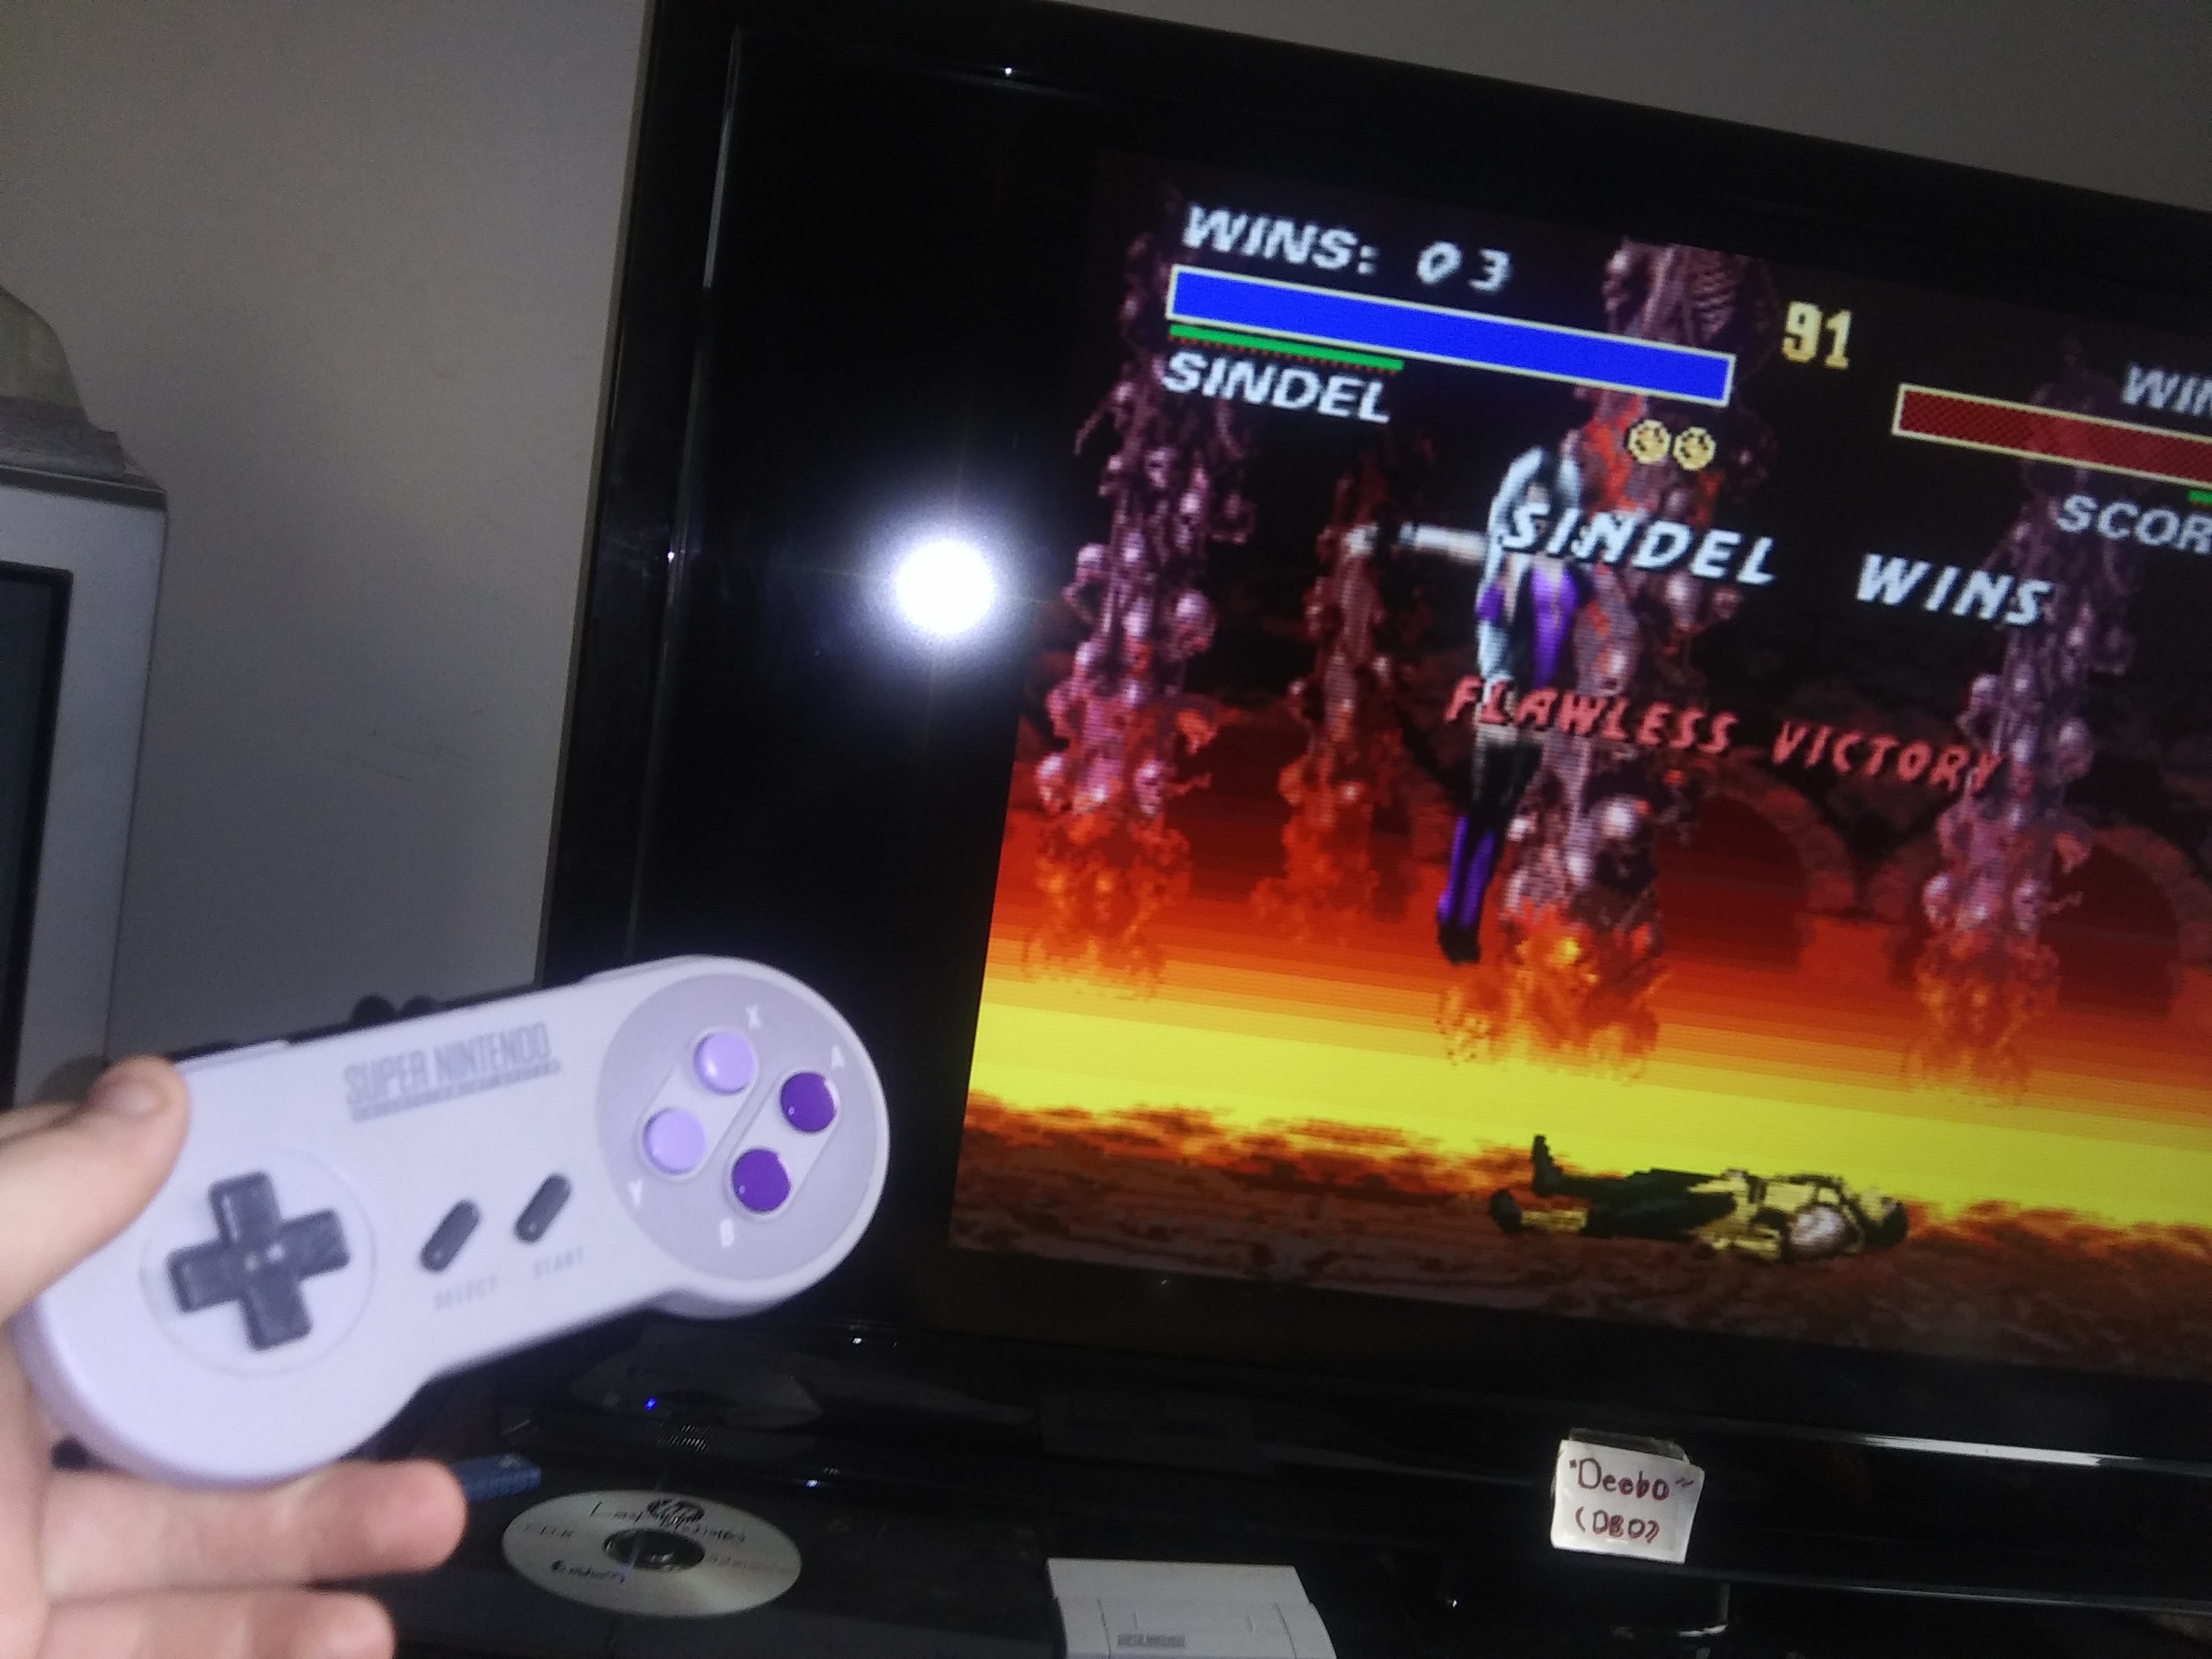 Deebo: Mortal Kombat 3 [Very Easy/ Win Streak] (SNES/Super Famicom Emulated) 3 points on 2019-07-16 18:29:44